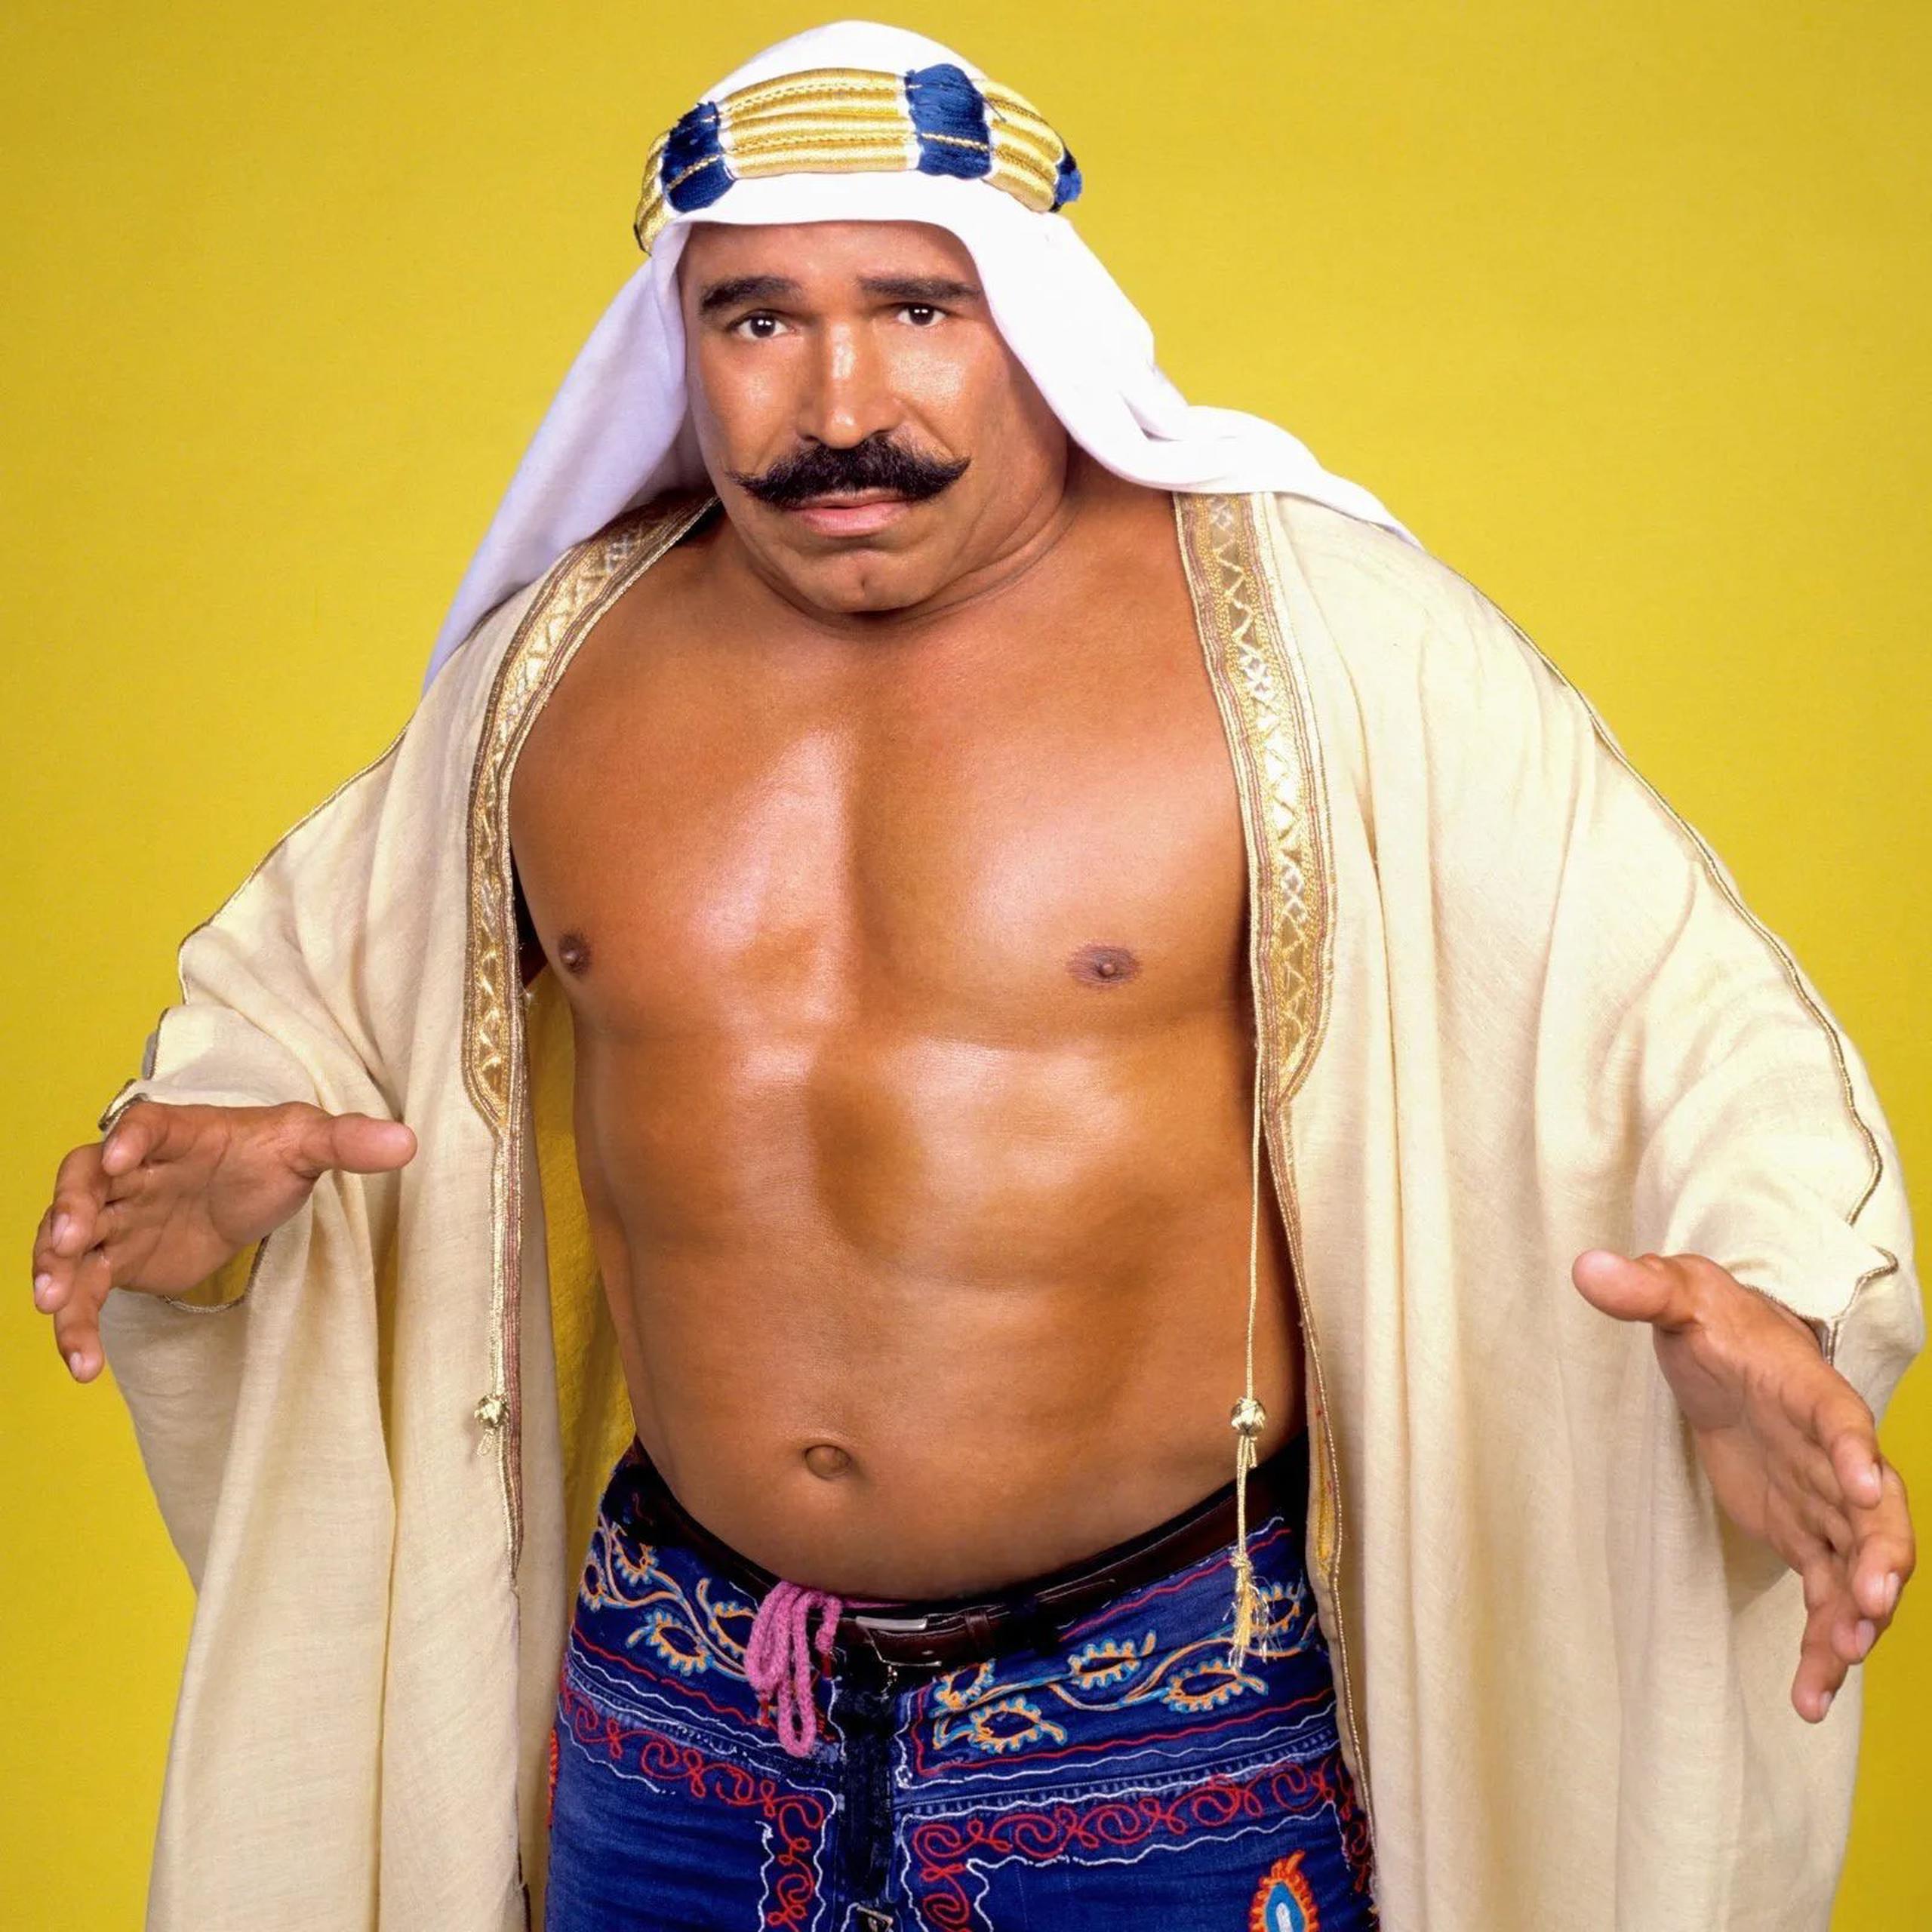 El Iron Sheik aparece aquí en una imagen durante su tiempo activo como luchador.